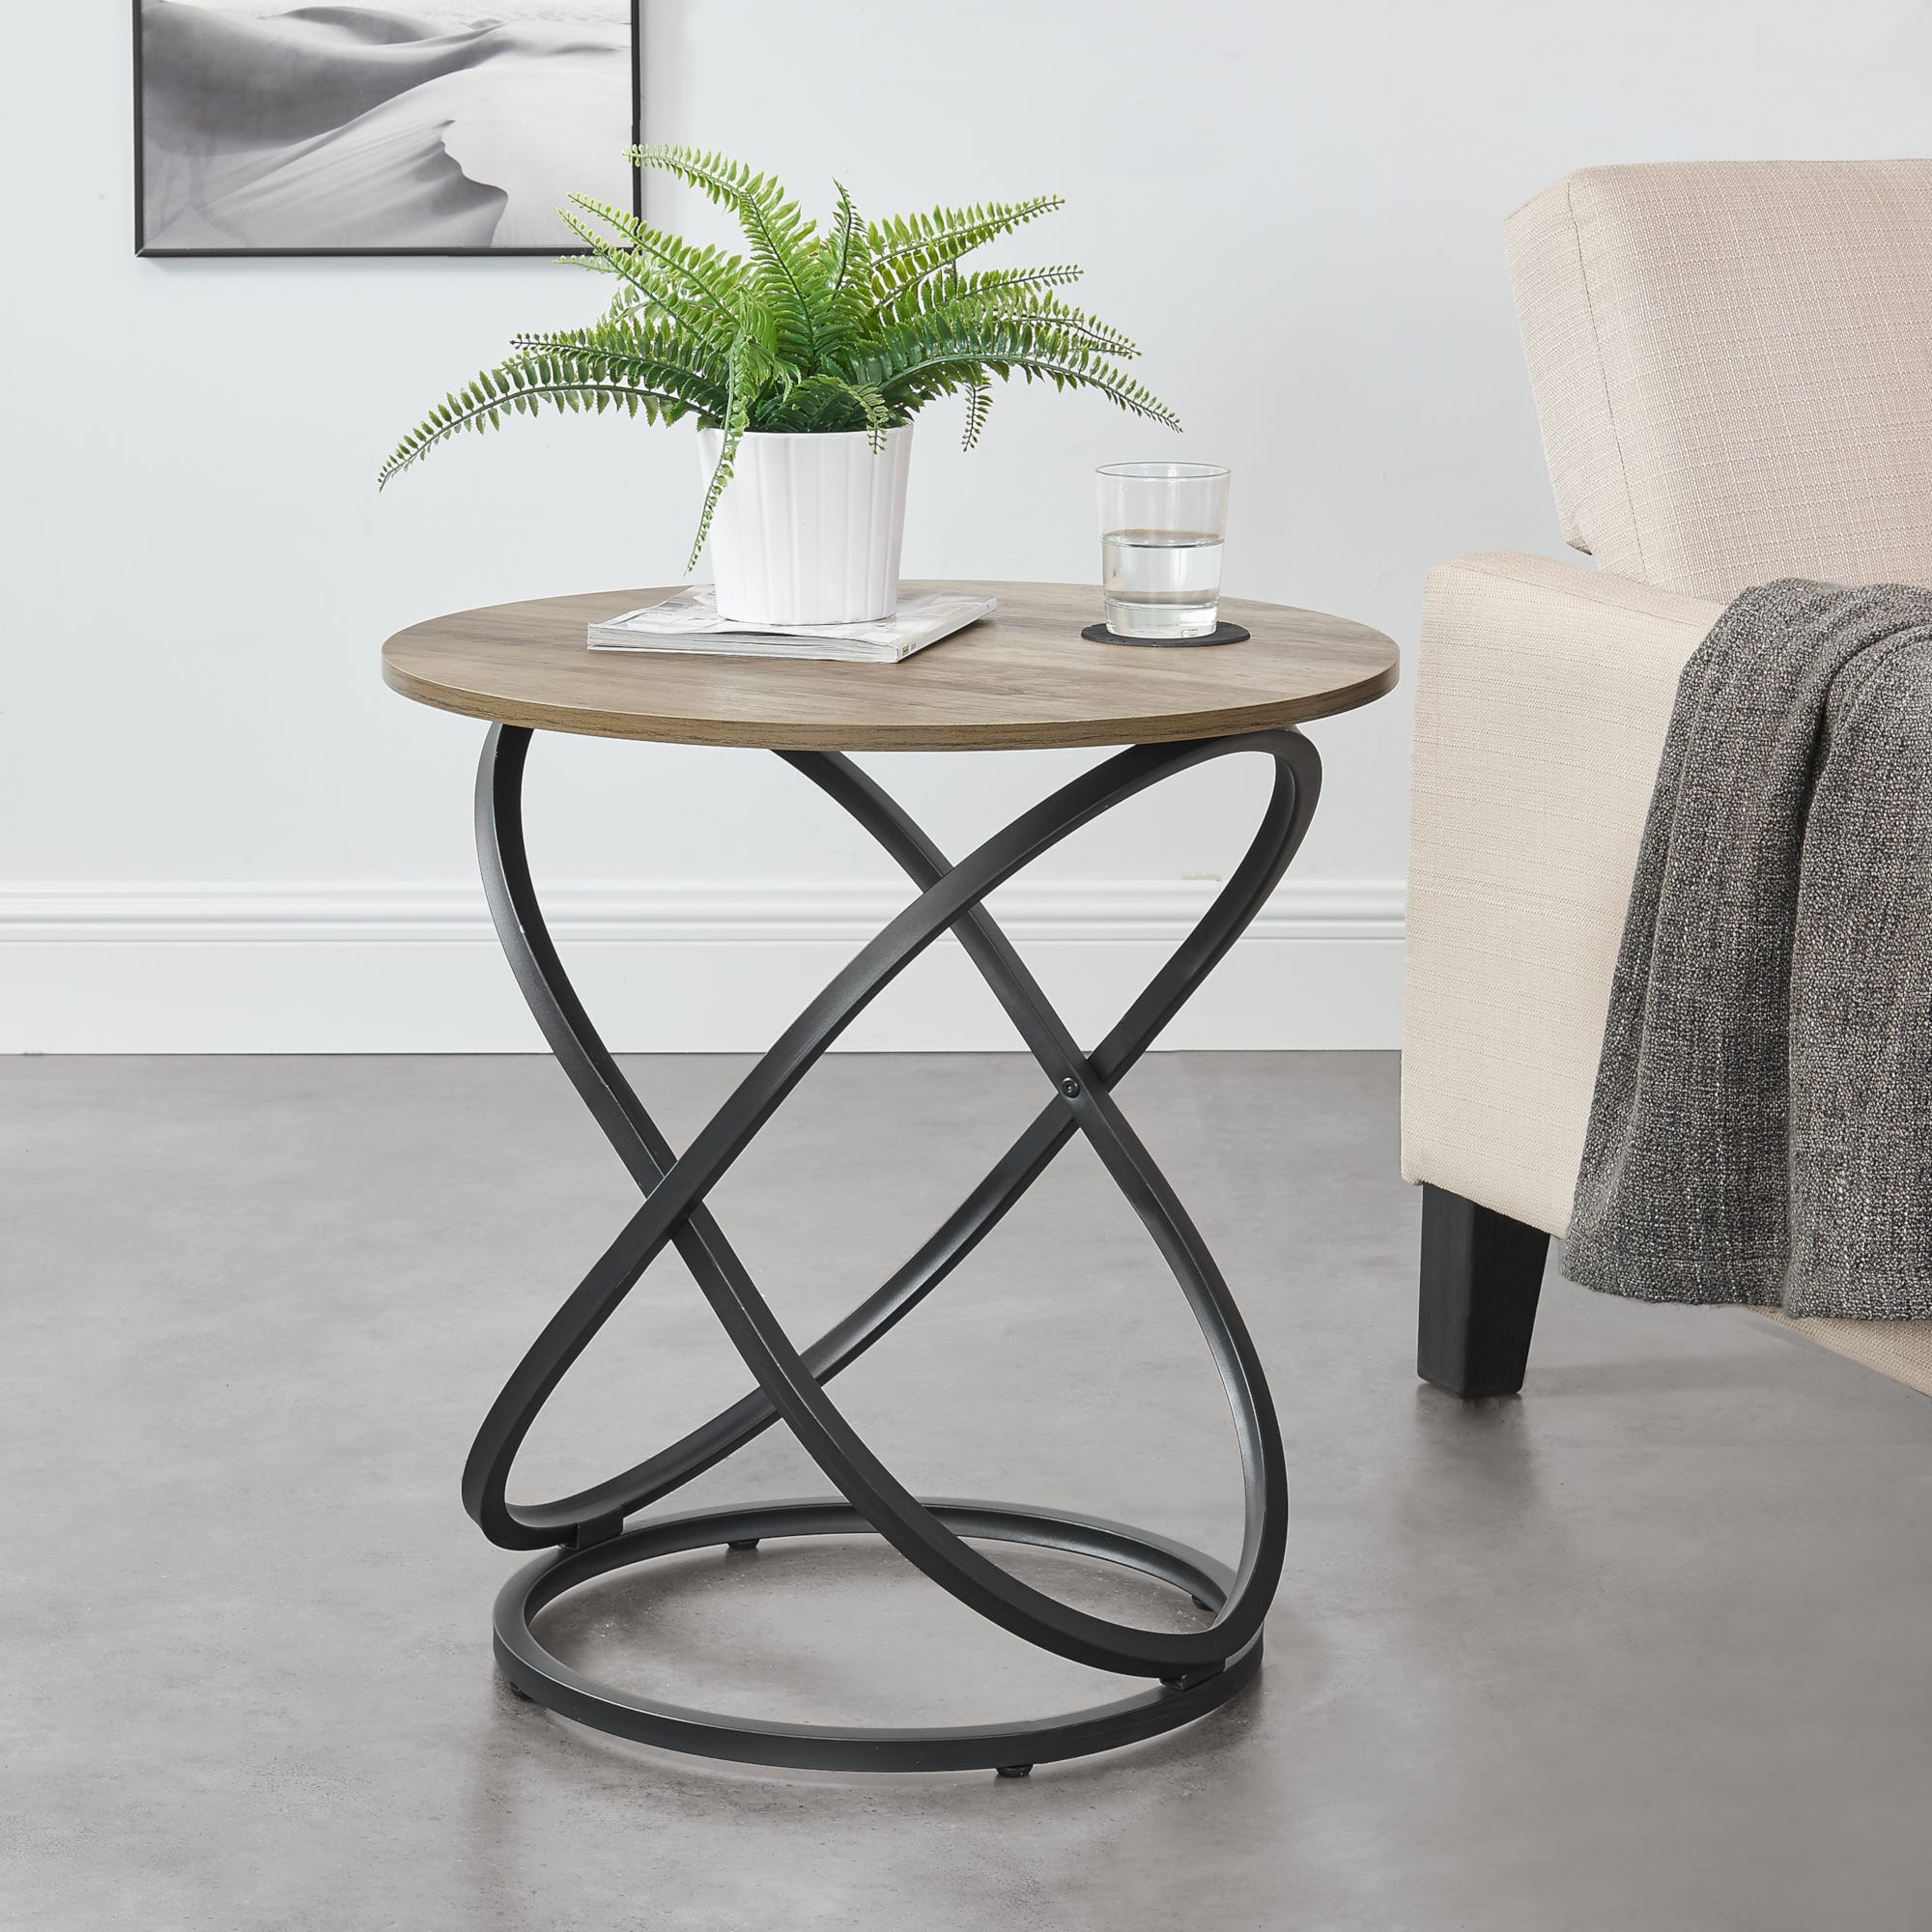 en.casa] Tavolino da Caffè con Base a Spirale 61 x 59 cm Tavolino